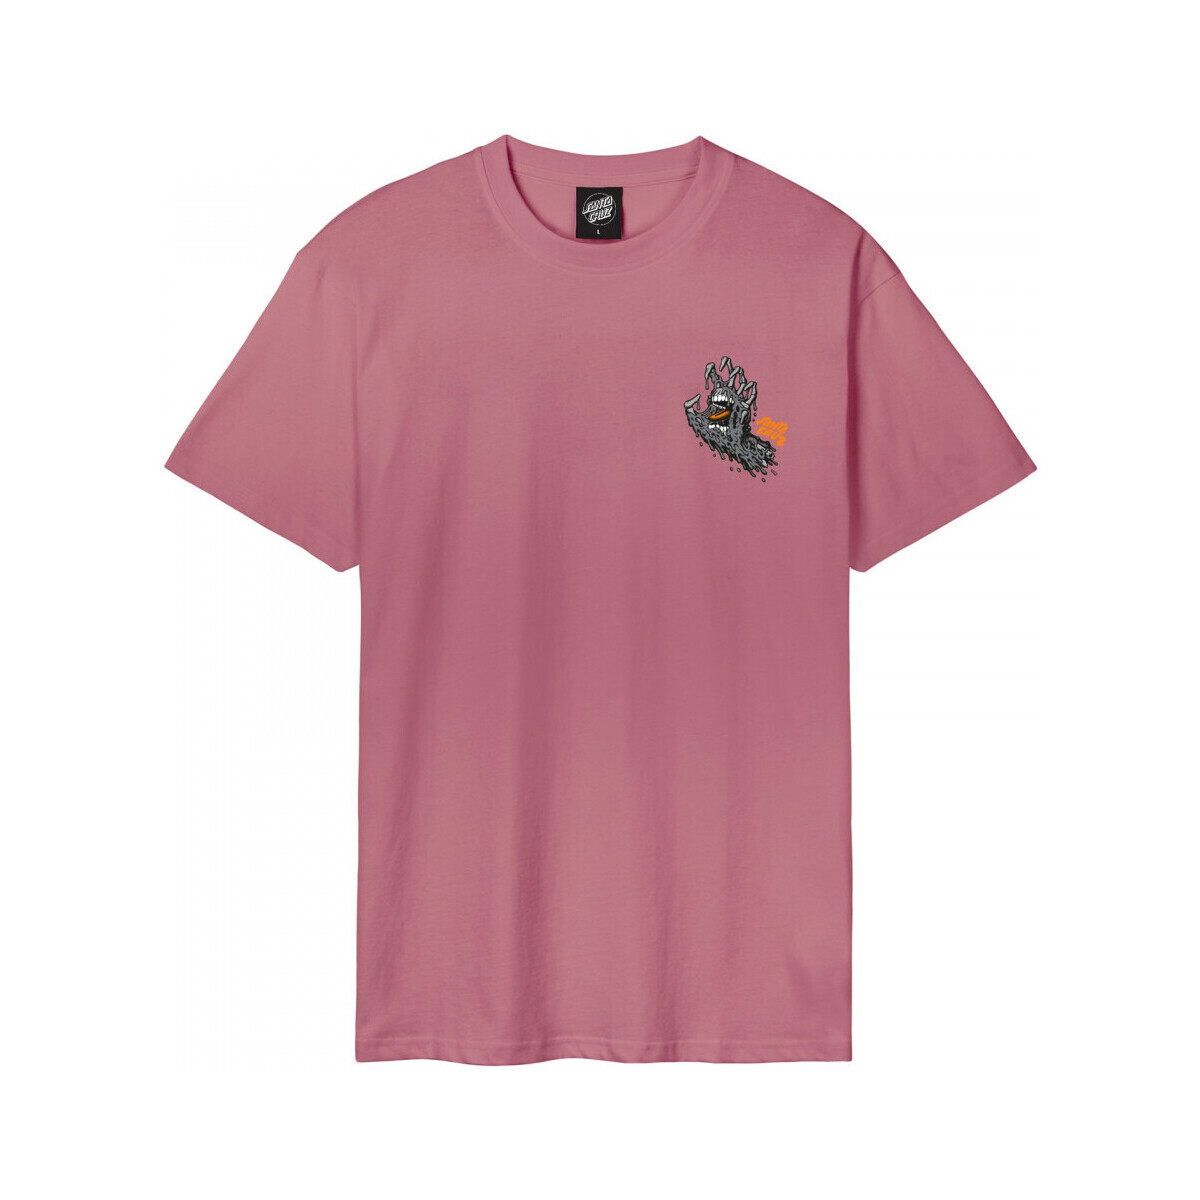 Îmbracaminte Bărbați Tricouri & Tricouri Polo Santa Cruz Melting hand roz